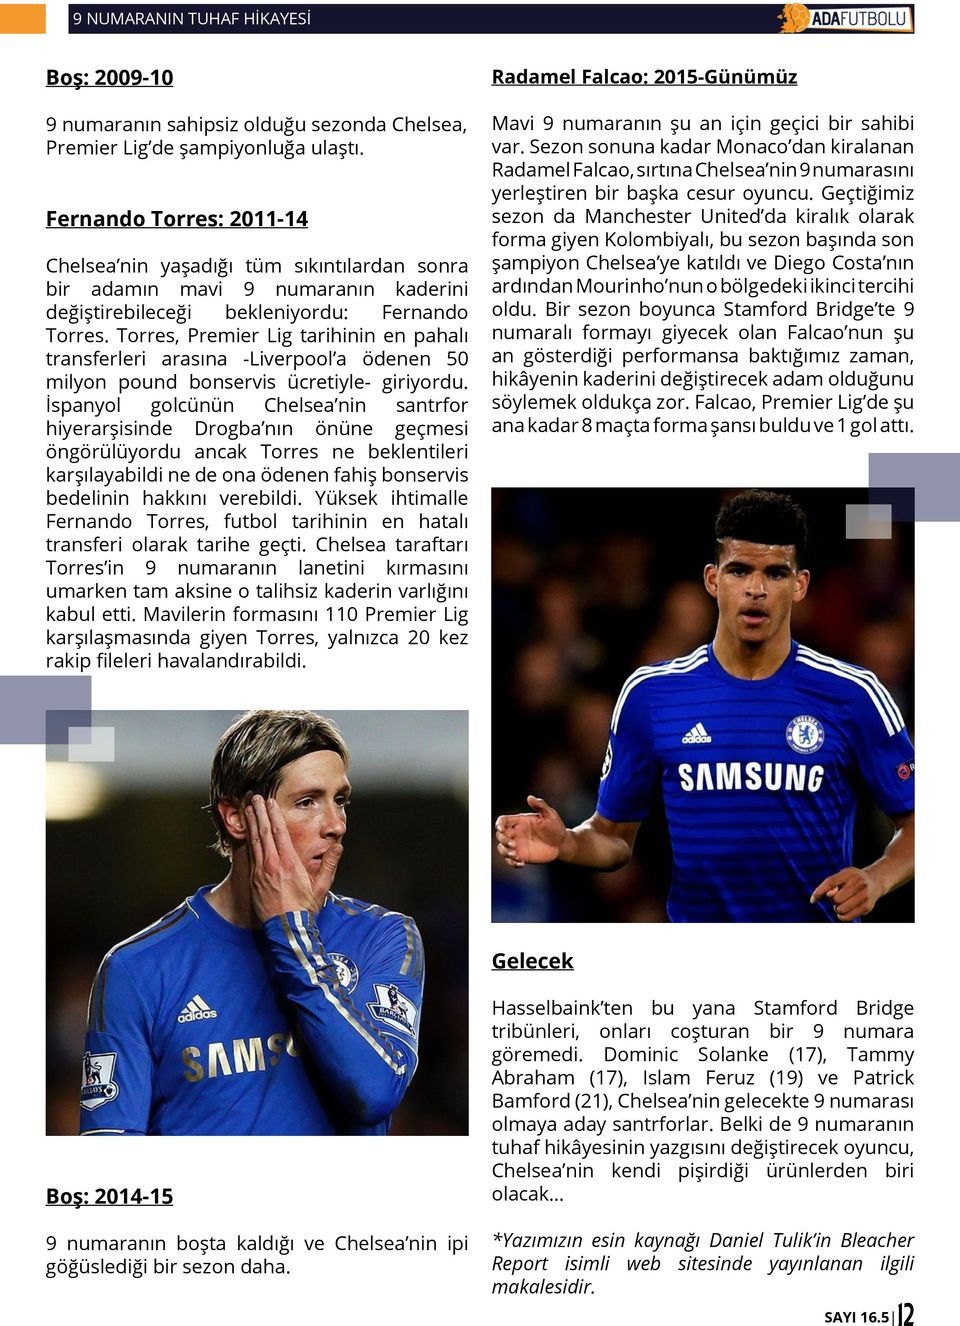 Torres, Premier Lig tarihinin en pahalı transferleri arasına -Liverpool a ödenen 50 milyon pound bonservis ücretiyle- giriyordu.